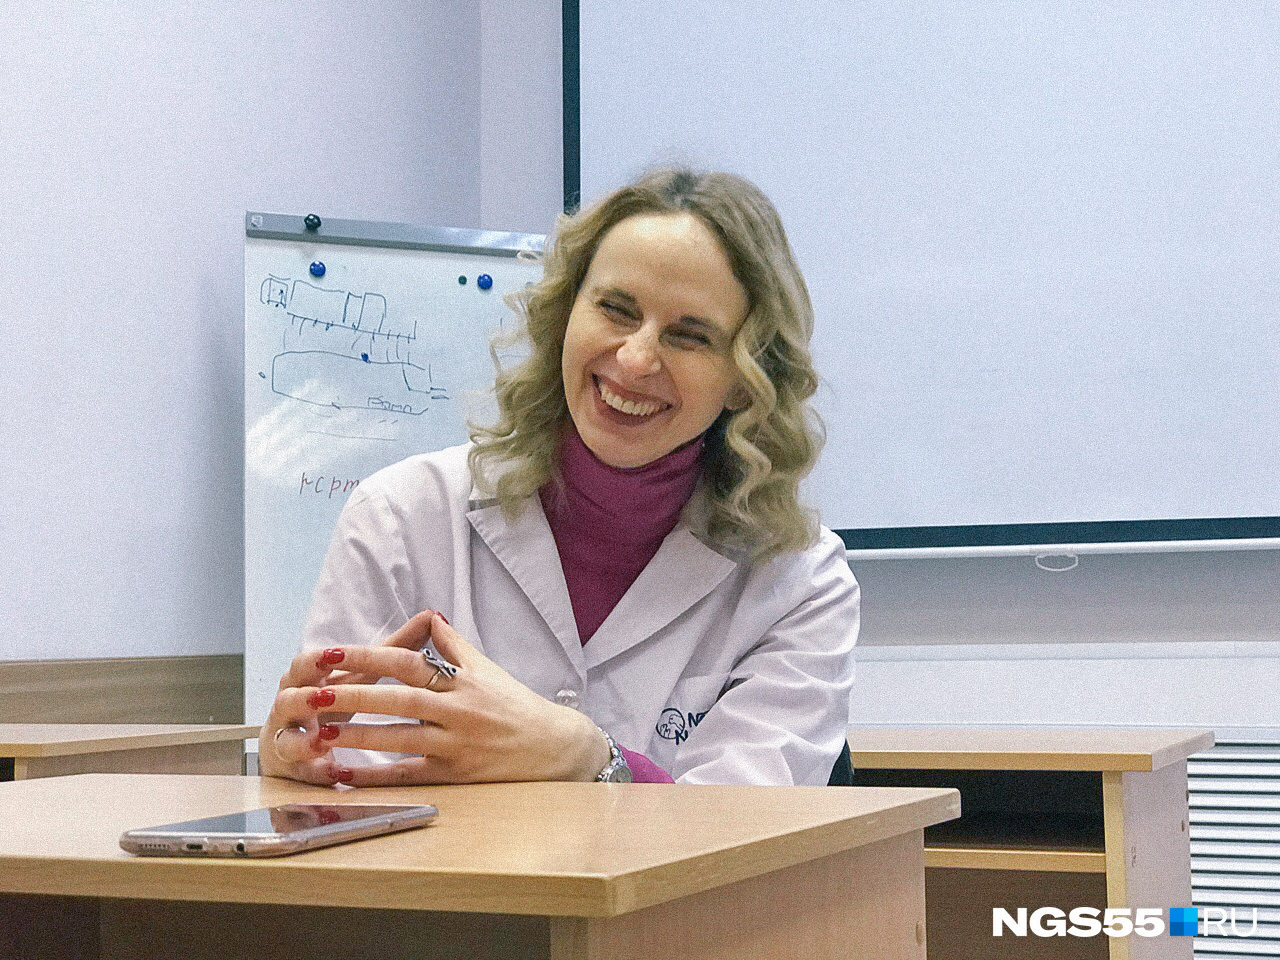 Сейчас Анна делится своим опытом с другими врачами — она ведет лекции в центре повышения квалификации работников здравоохранения